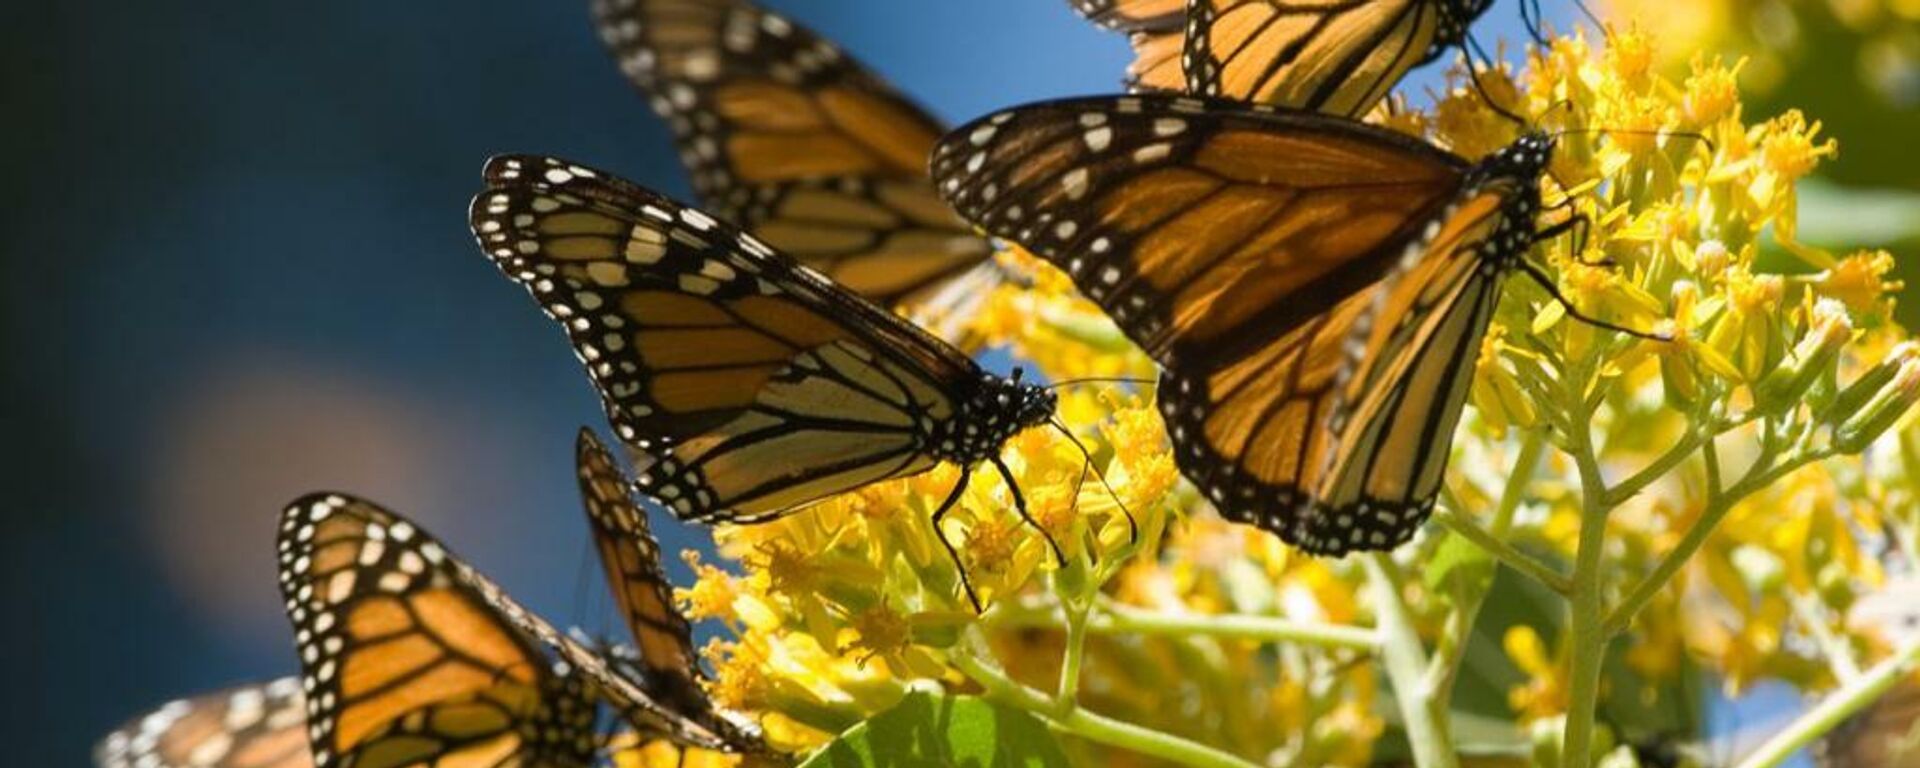 Mariposas monarca en los bosques del centro de México.  - Sputnik Mundo, 1920, 14.12.2021